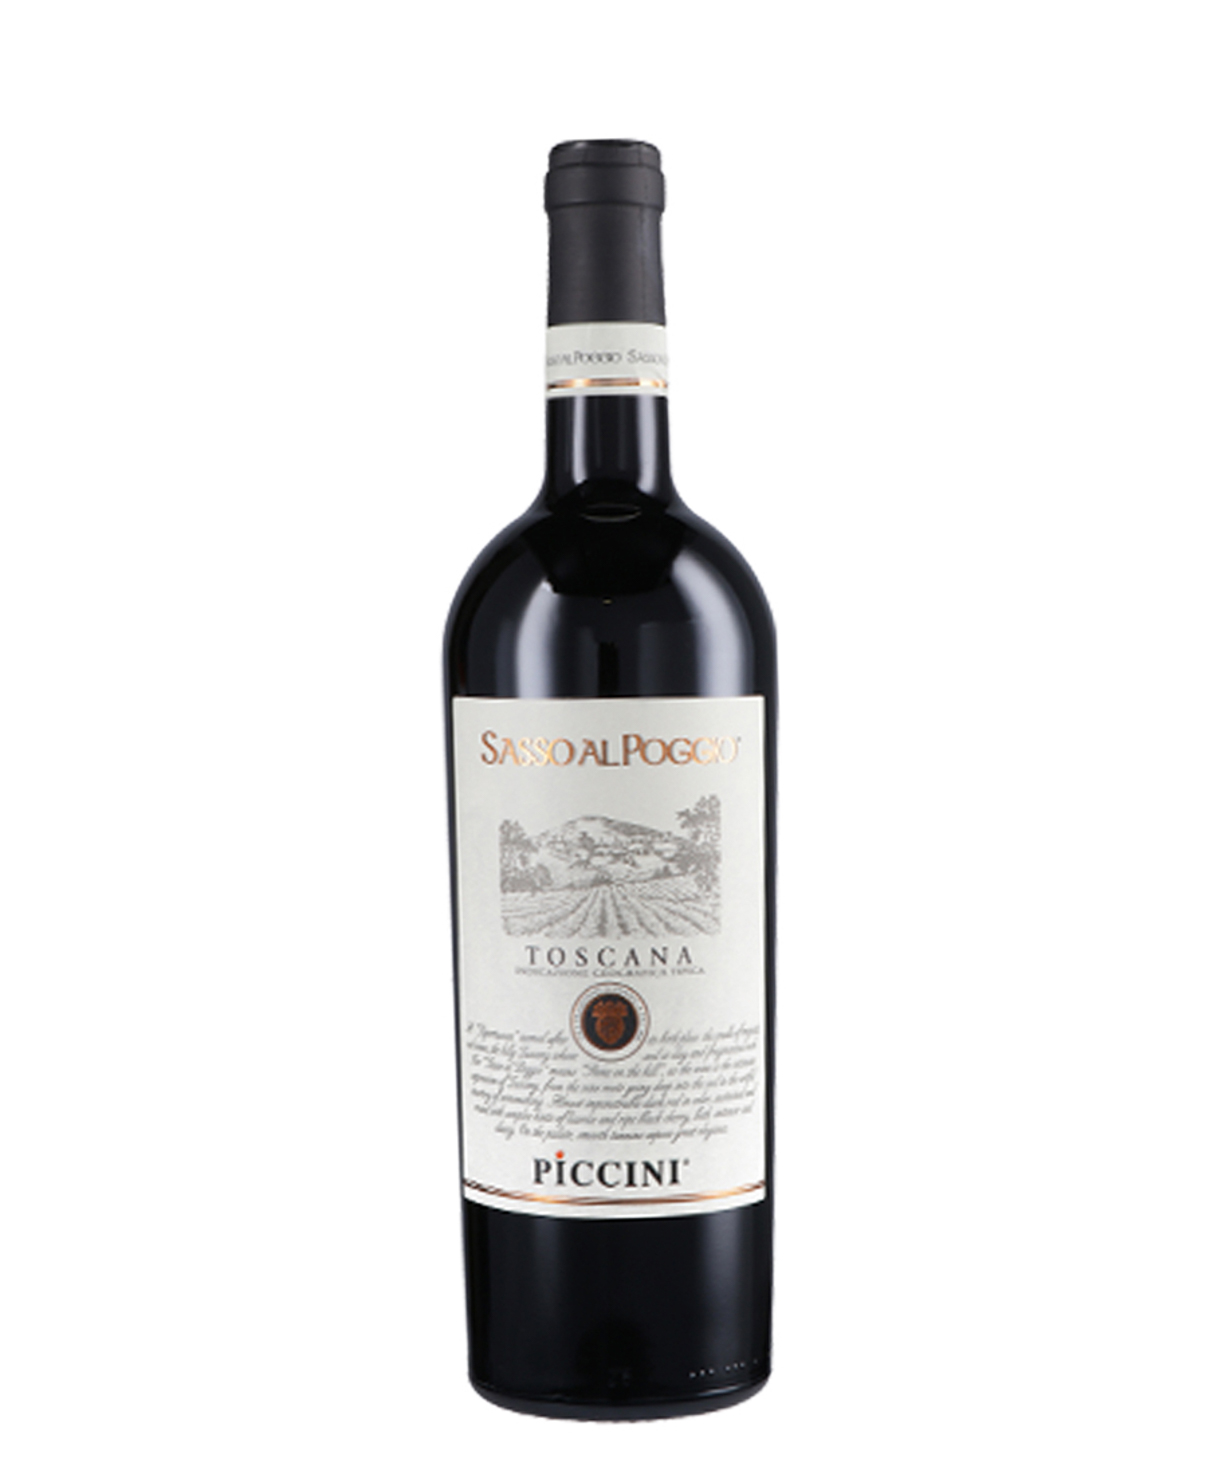 Գինի «Piccini Toscana Sasso Al Poggio» կարմիր, չոր 750մլ